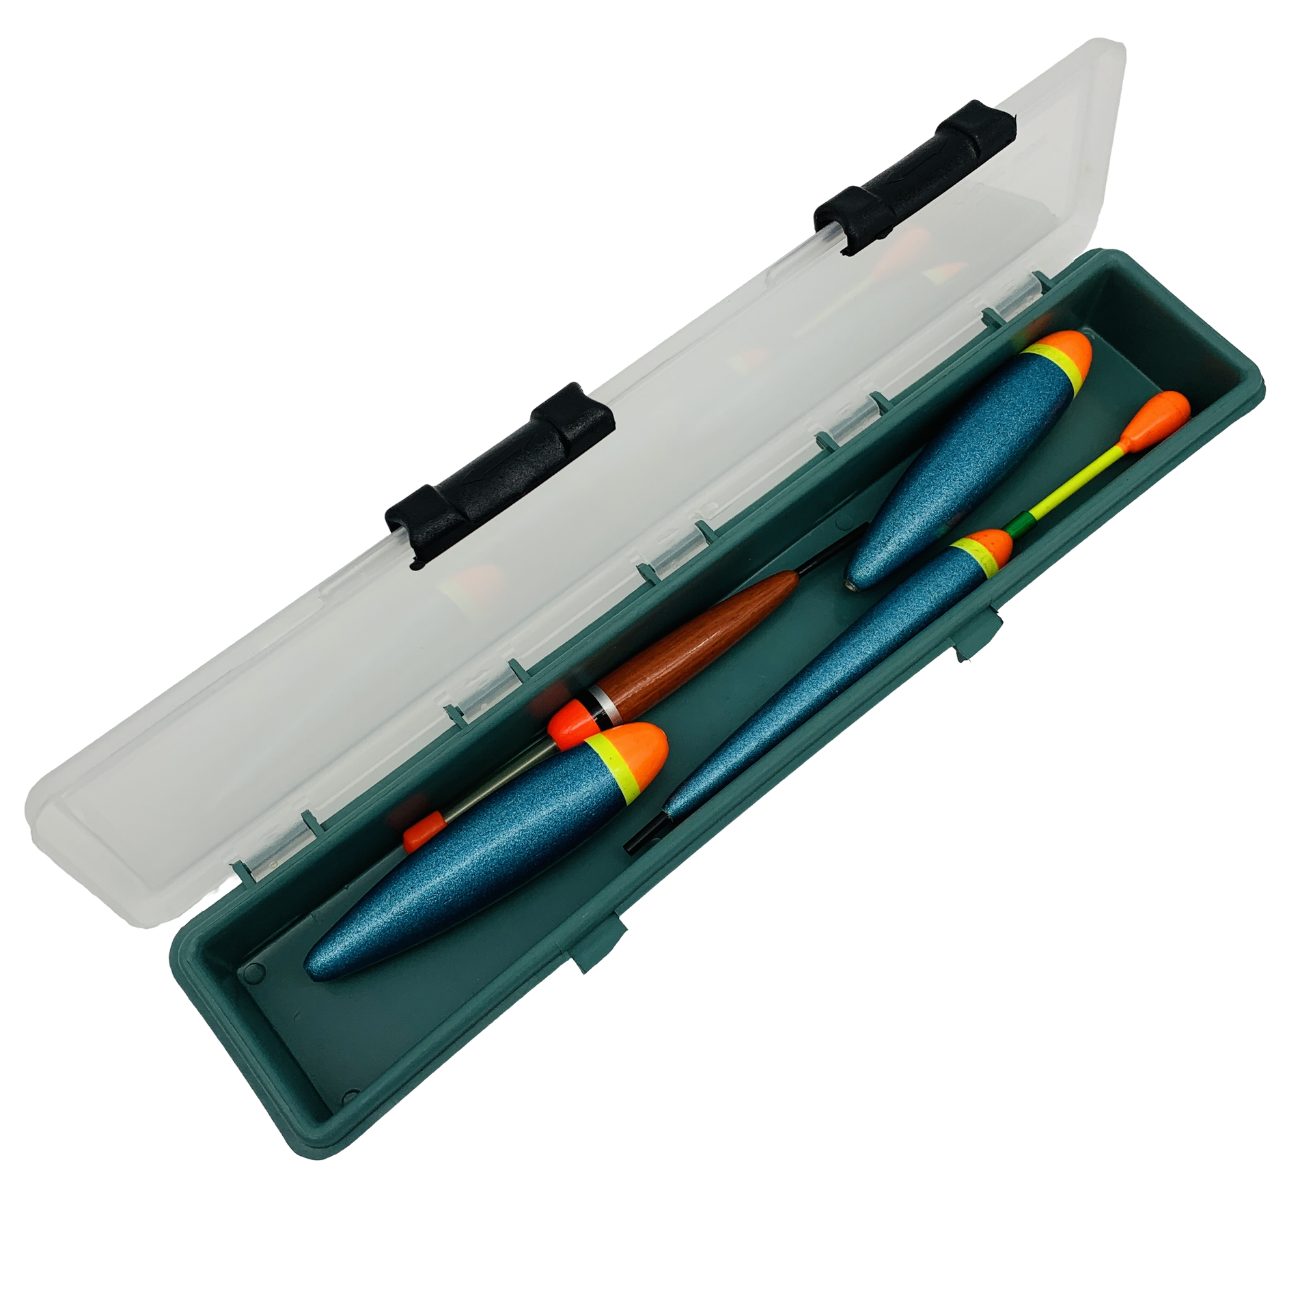 Behr Allroundpose Posenbox Schwimmer Kiste Kunststoff Tackle Box 33 x 6,5 x 3 cm grün | Posen